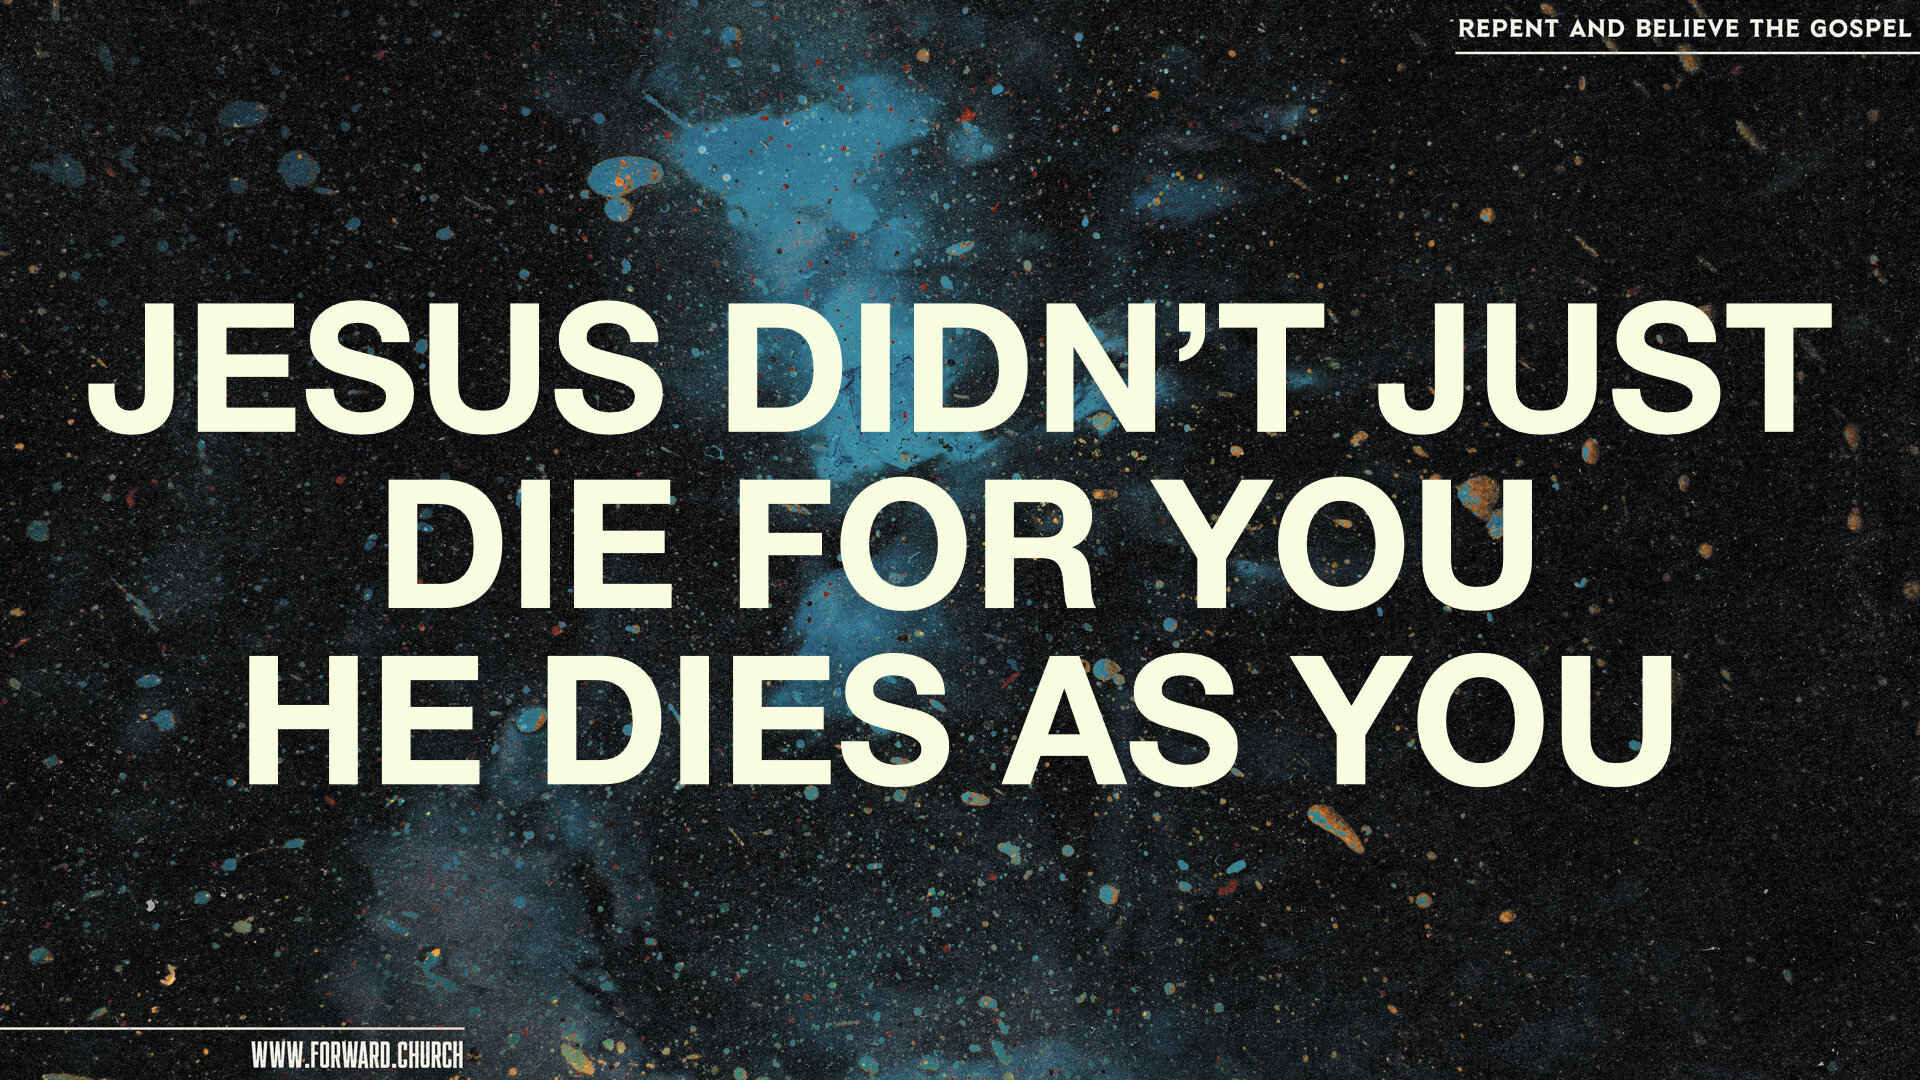 4 Jesus Died As You.011.jpeg